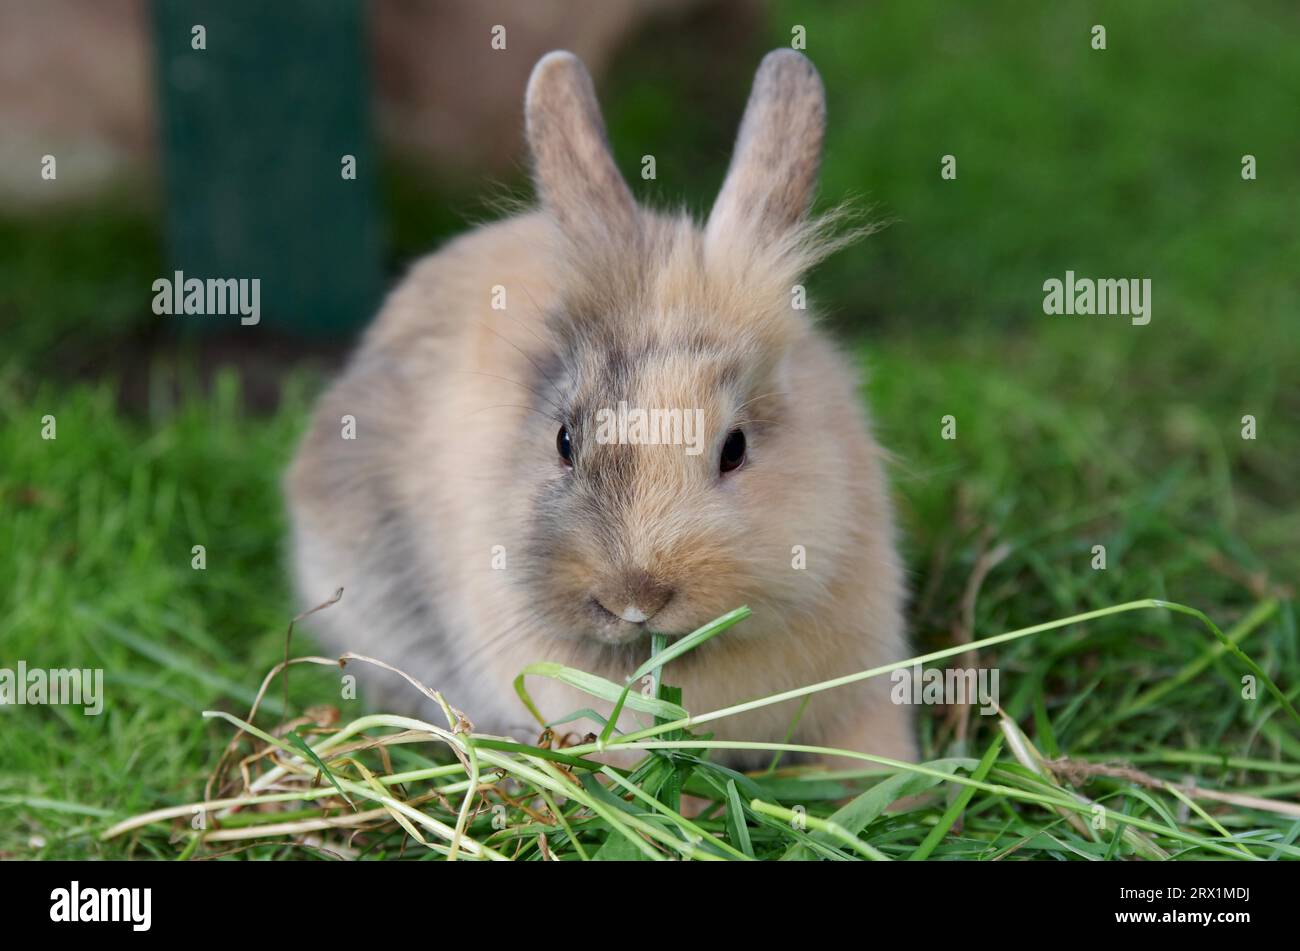 Kaninchen (Cuniculus), Haustier, Fell, Braun, Hase, niedlich, Gras, Gehege, Ein junger Hauskaninchen sitzt im Gras und knabbert auf einem Grashalm Stockfoto